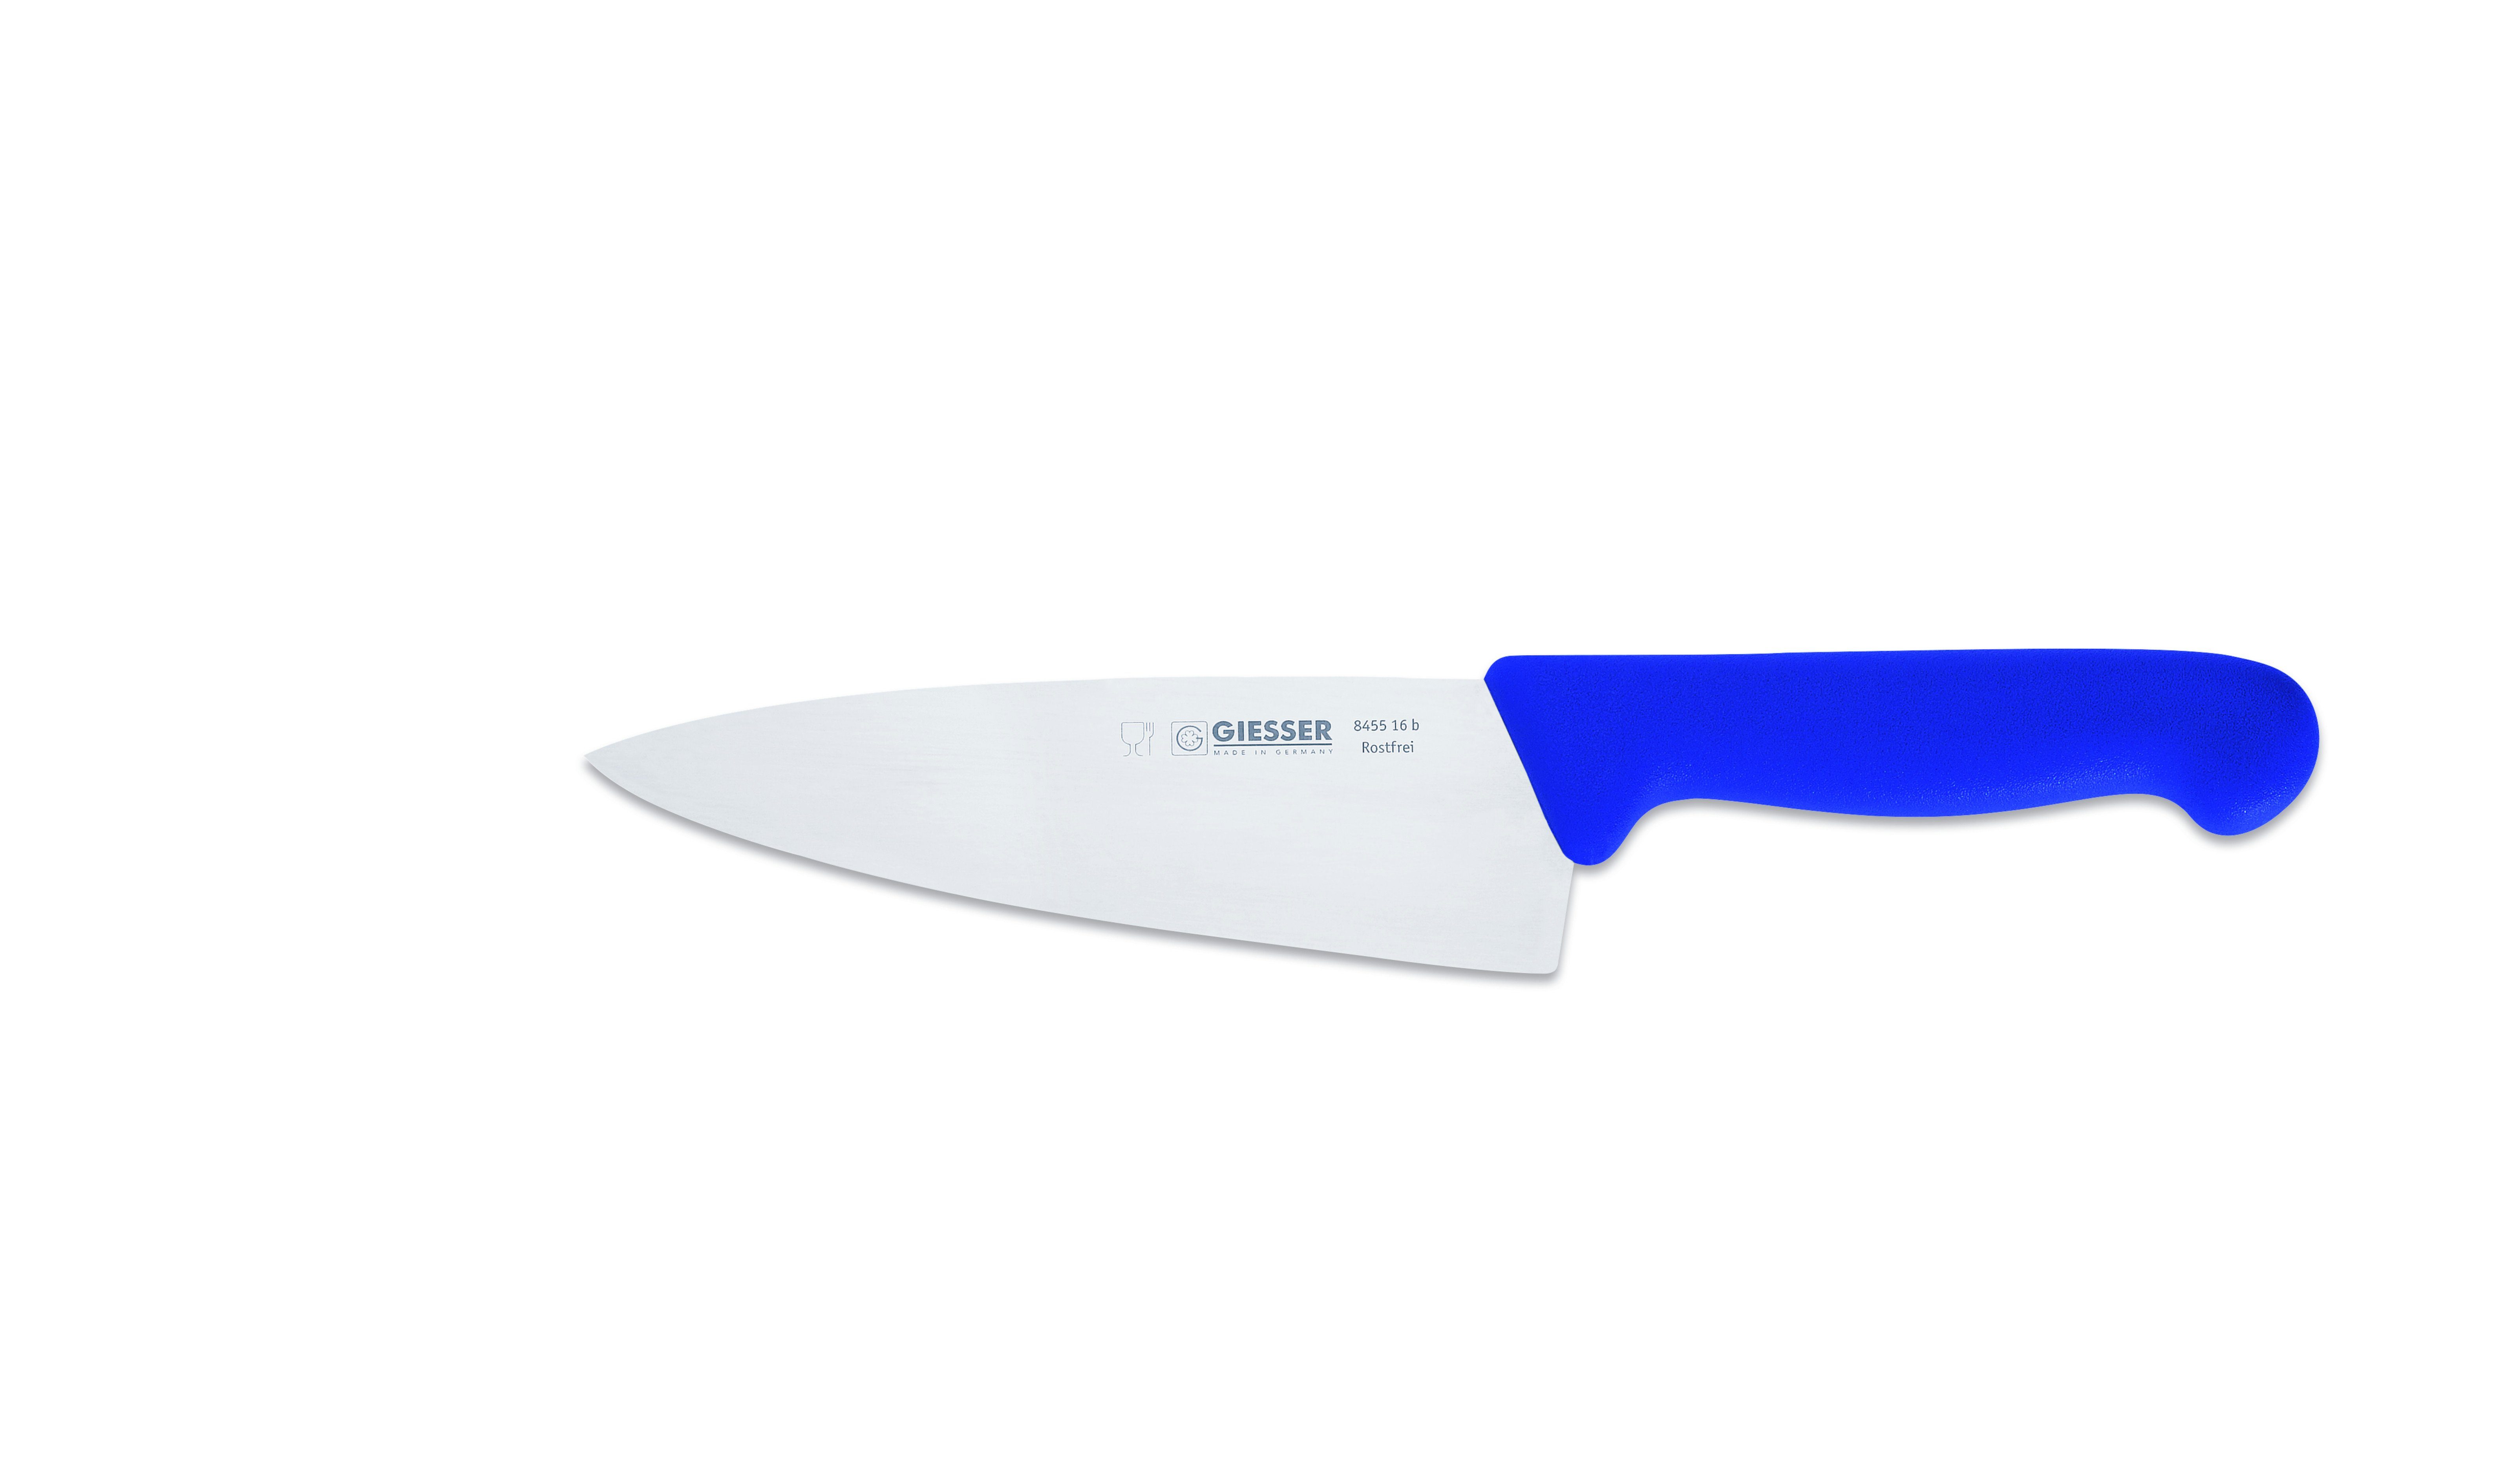 Giesser Handabzug, Kochmesser jede 8455, blau Küchenmesser scharf, Küche Messer Form, Ideal Rostfrei, für breite breit